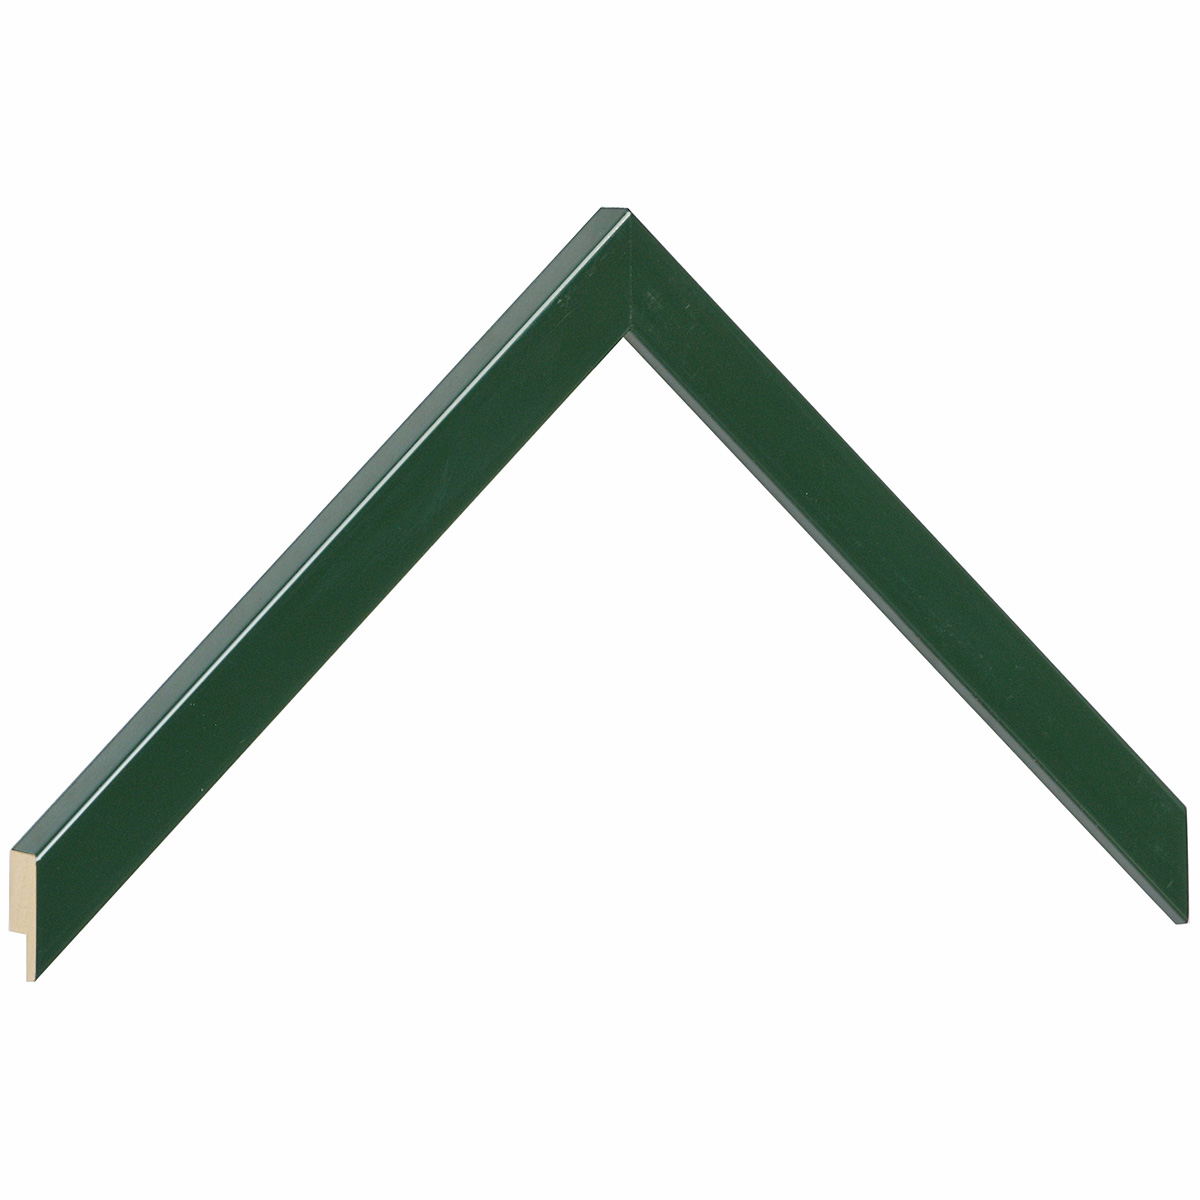 Bilderleiste Ayous flach 15mm breit 14hoch - grün glänzend - Musterwinkel